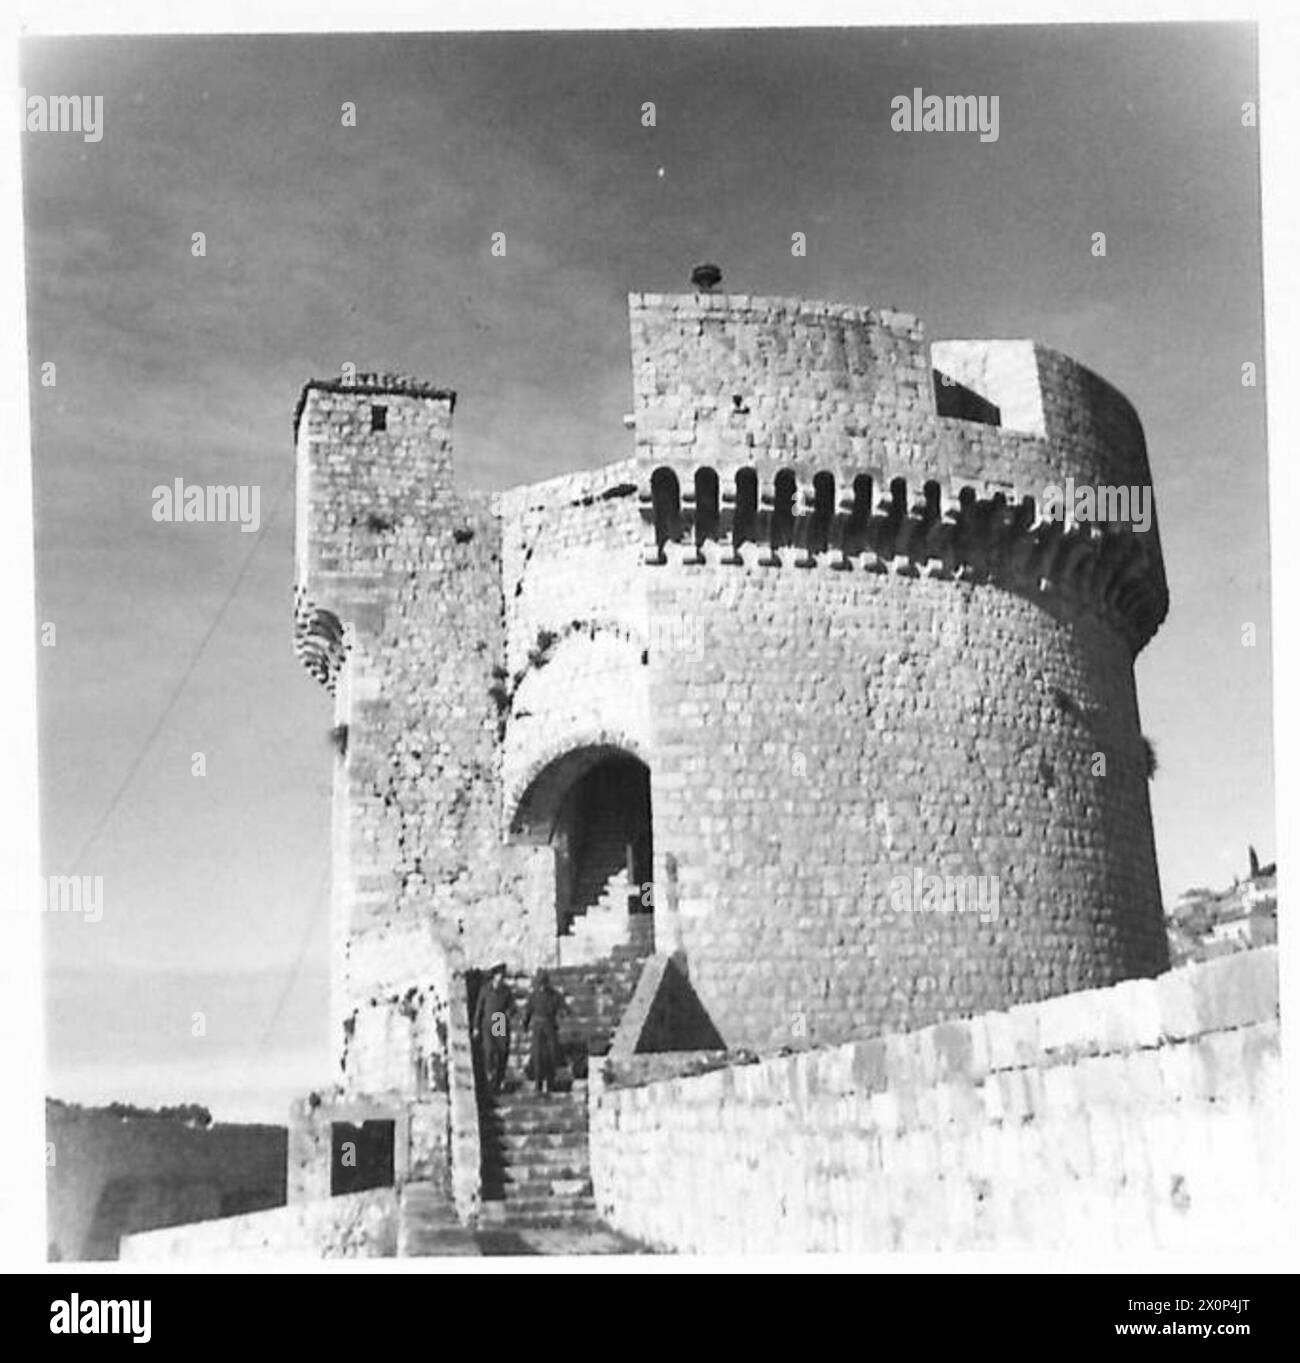 JUGOSLAVIA : VARI - dopo uno sguardo intorno dalla torre, gli uomini scendono i mille passi indietro verso la città. Negativo fotografico, British Army Foto Stock